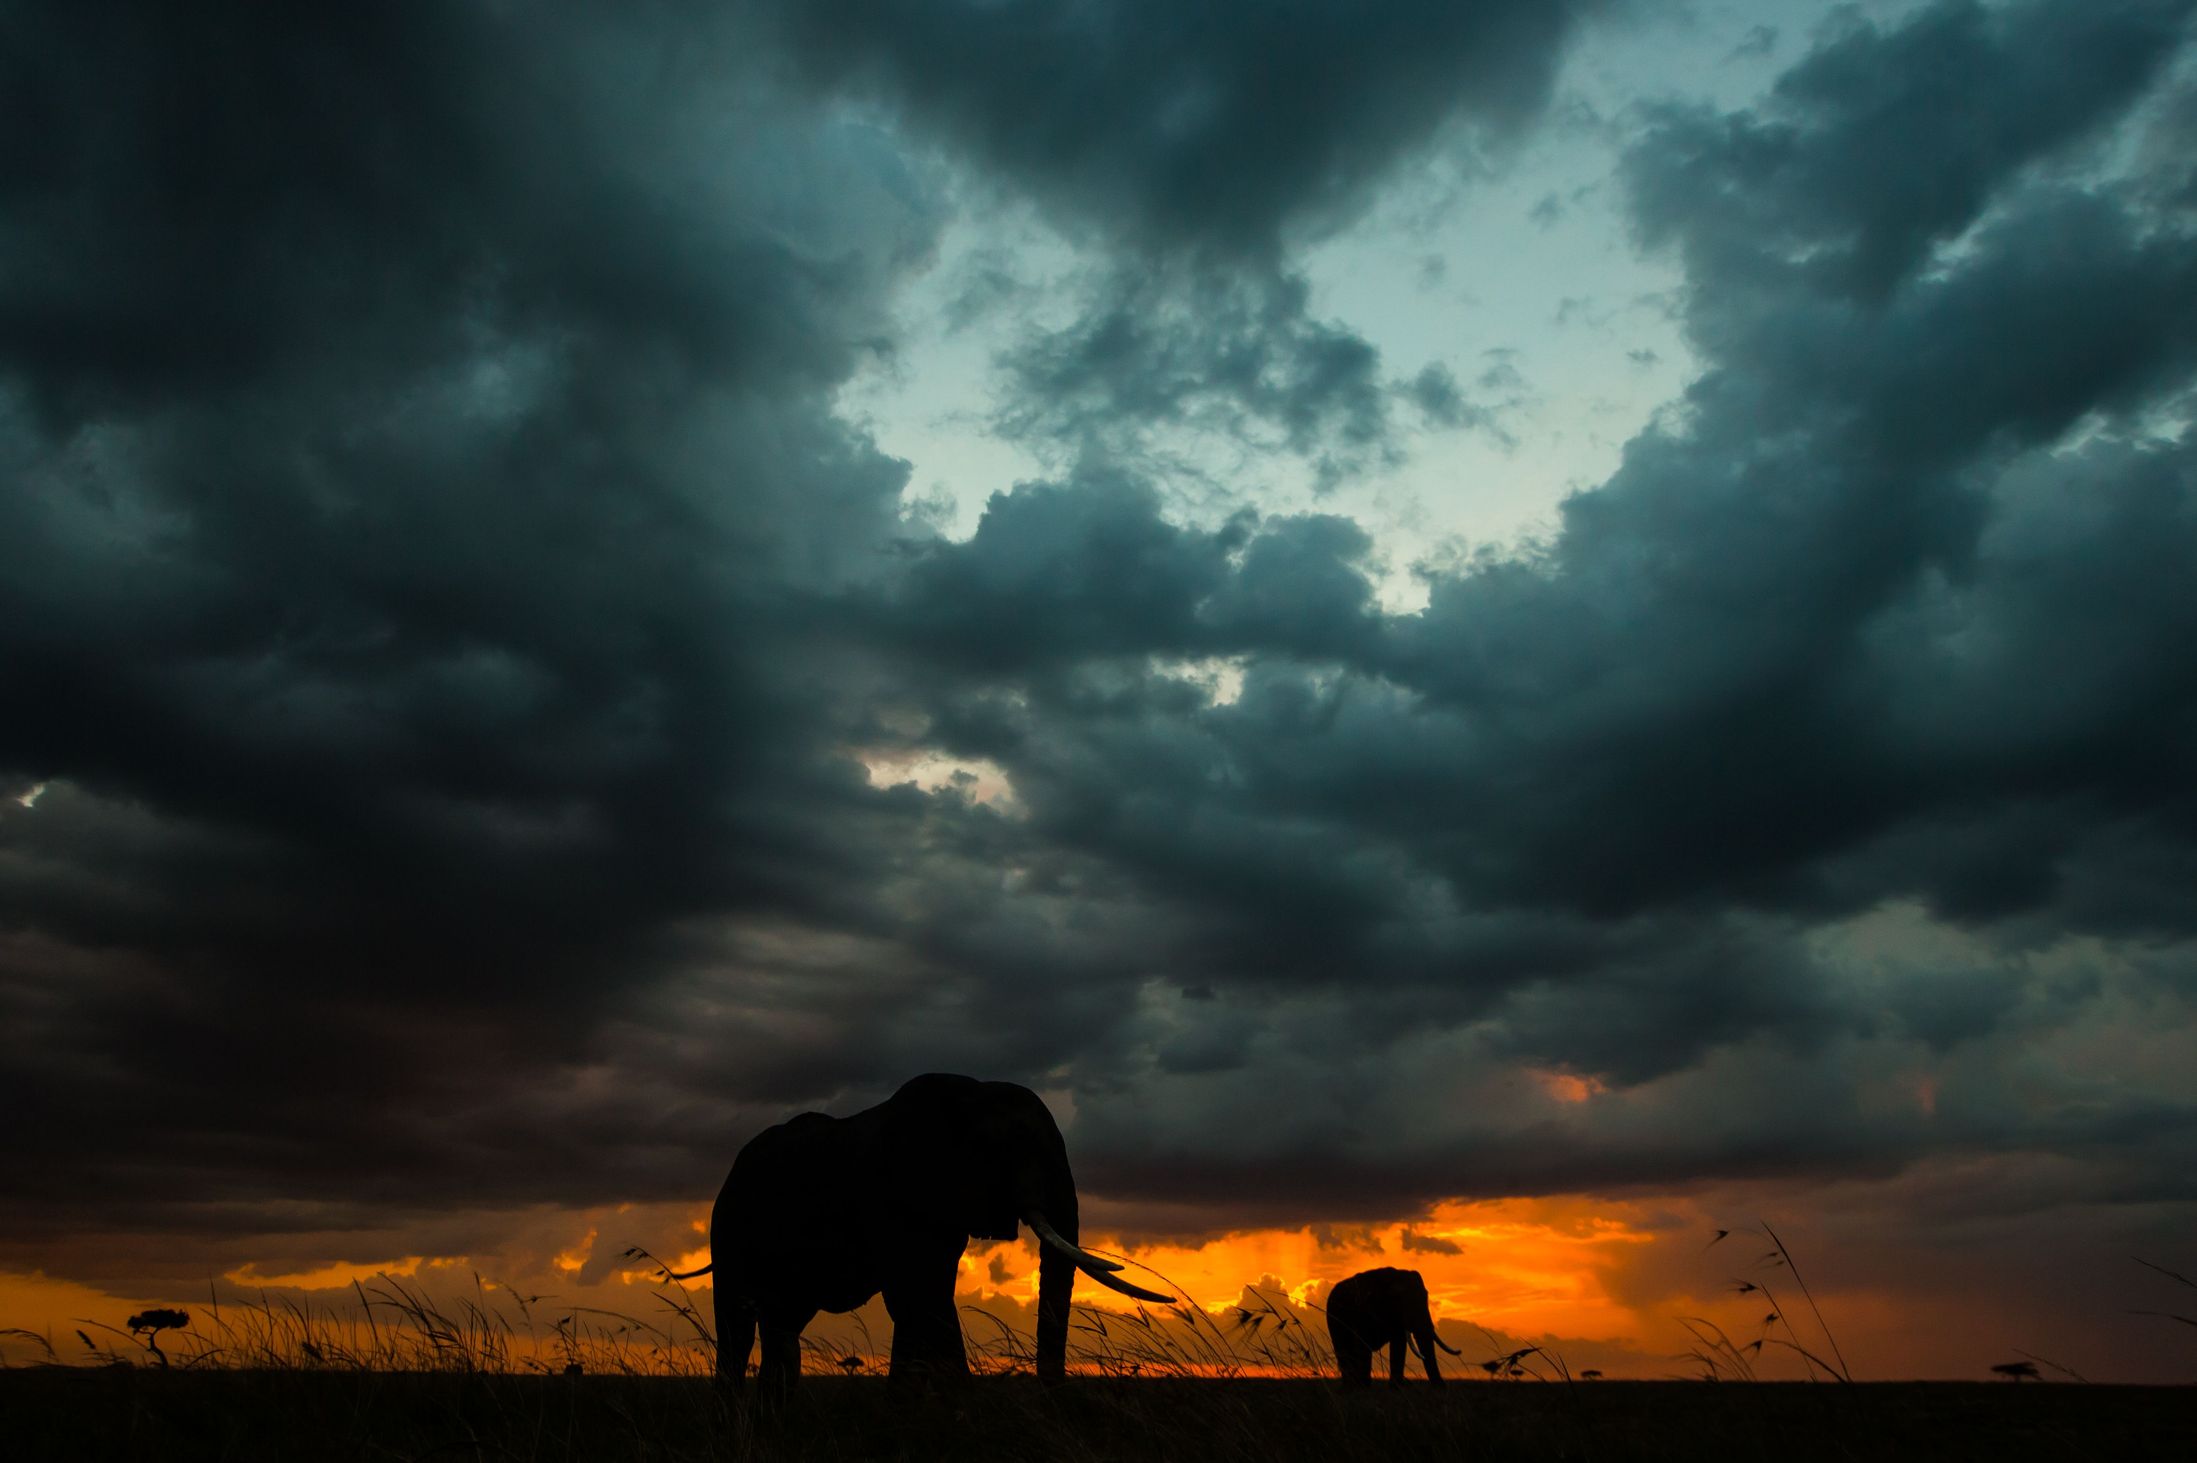 Феноменальные закаты и природа Кении